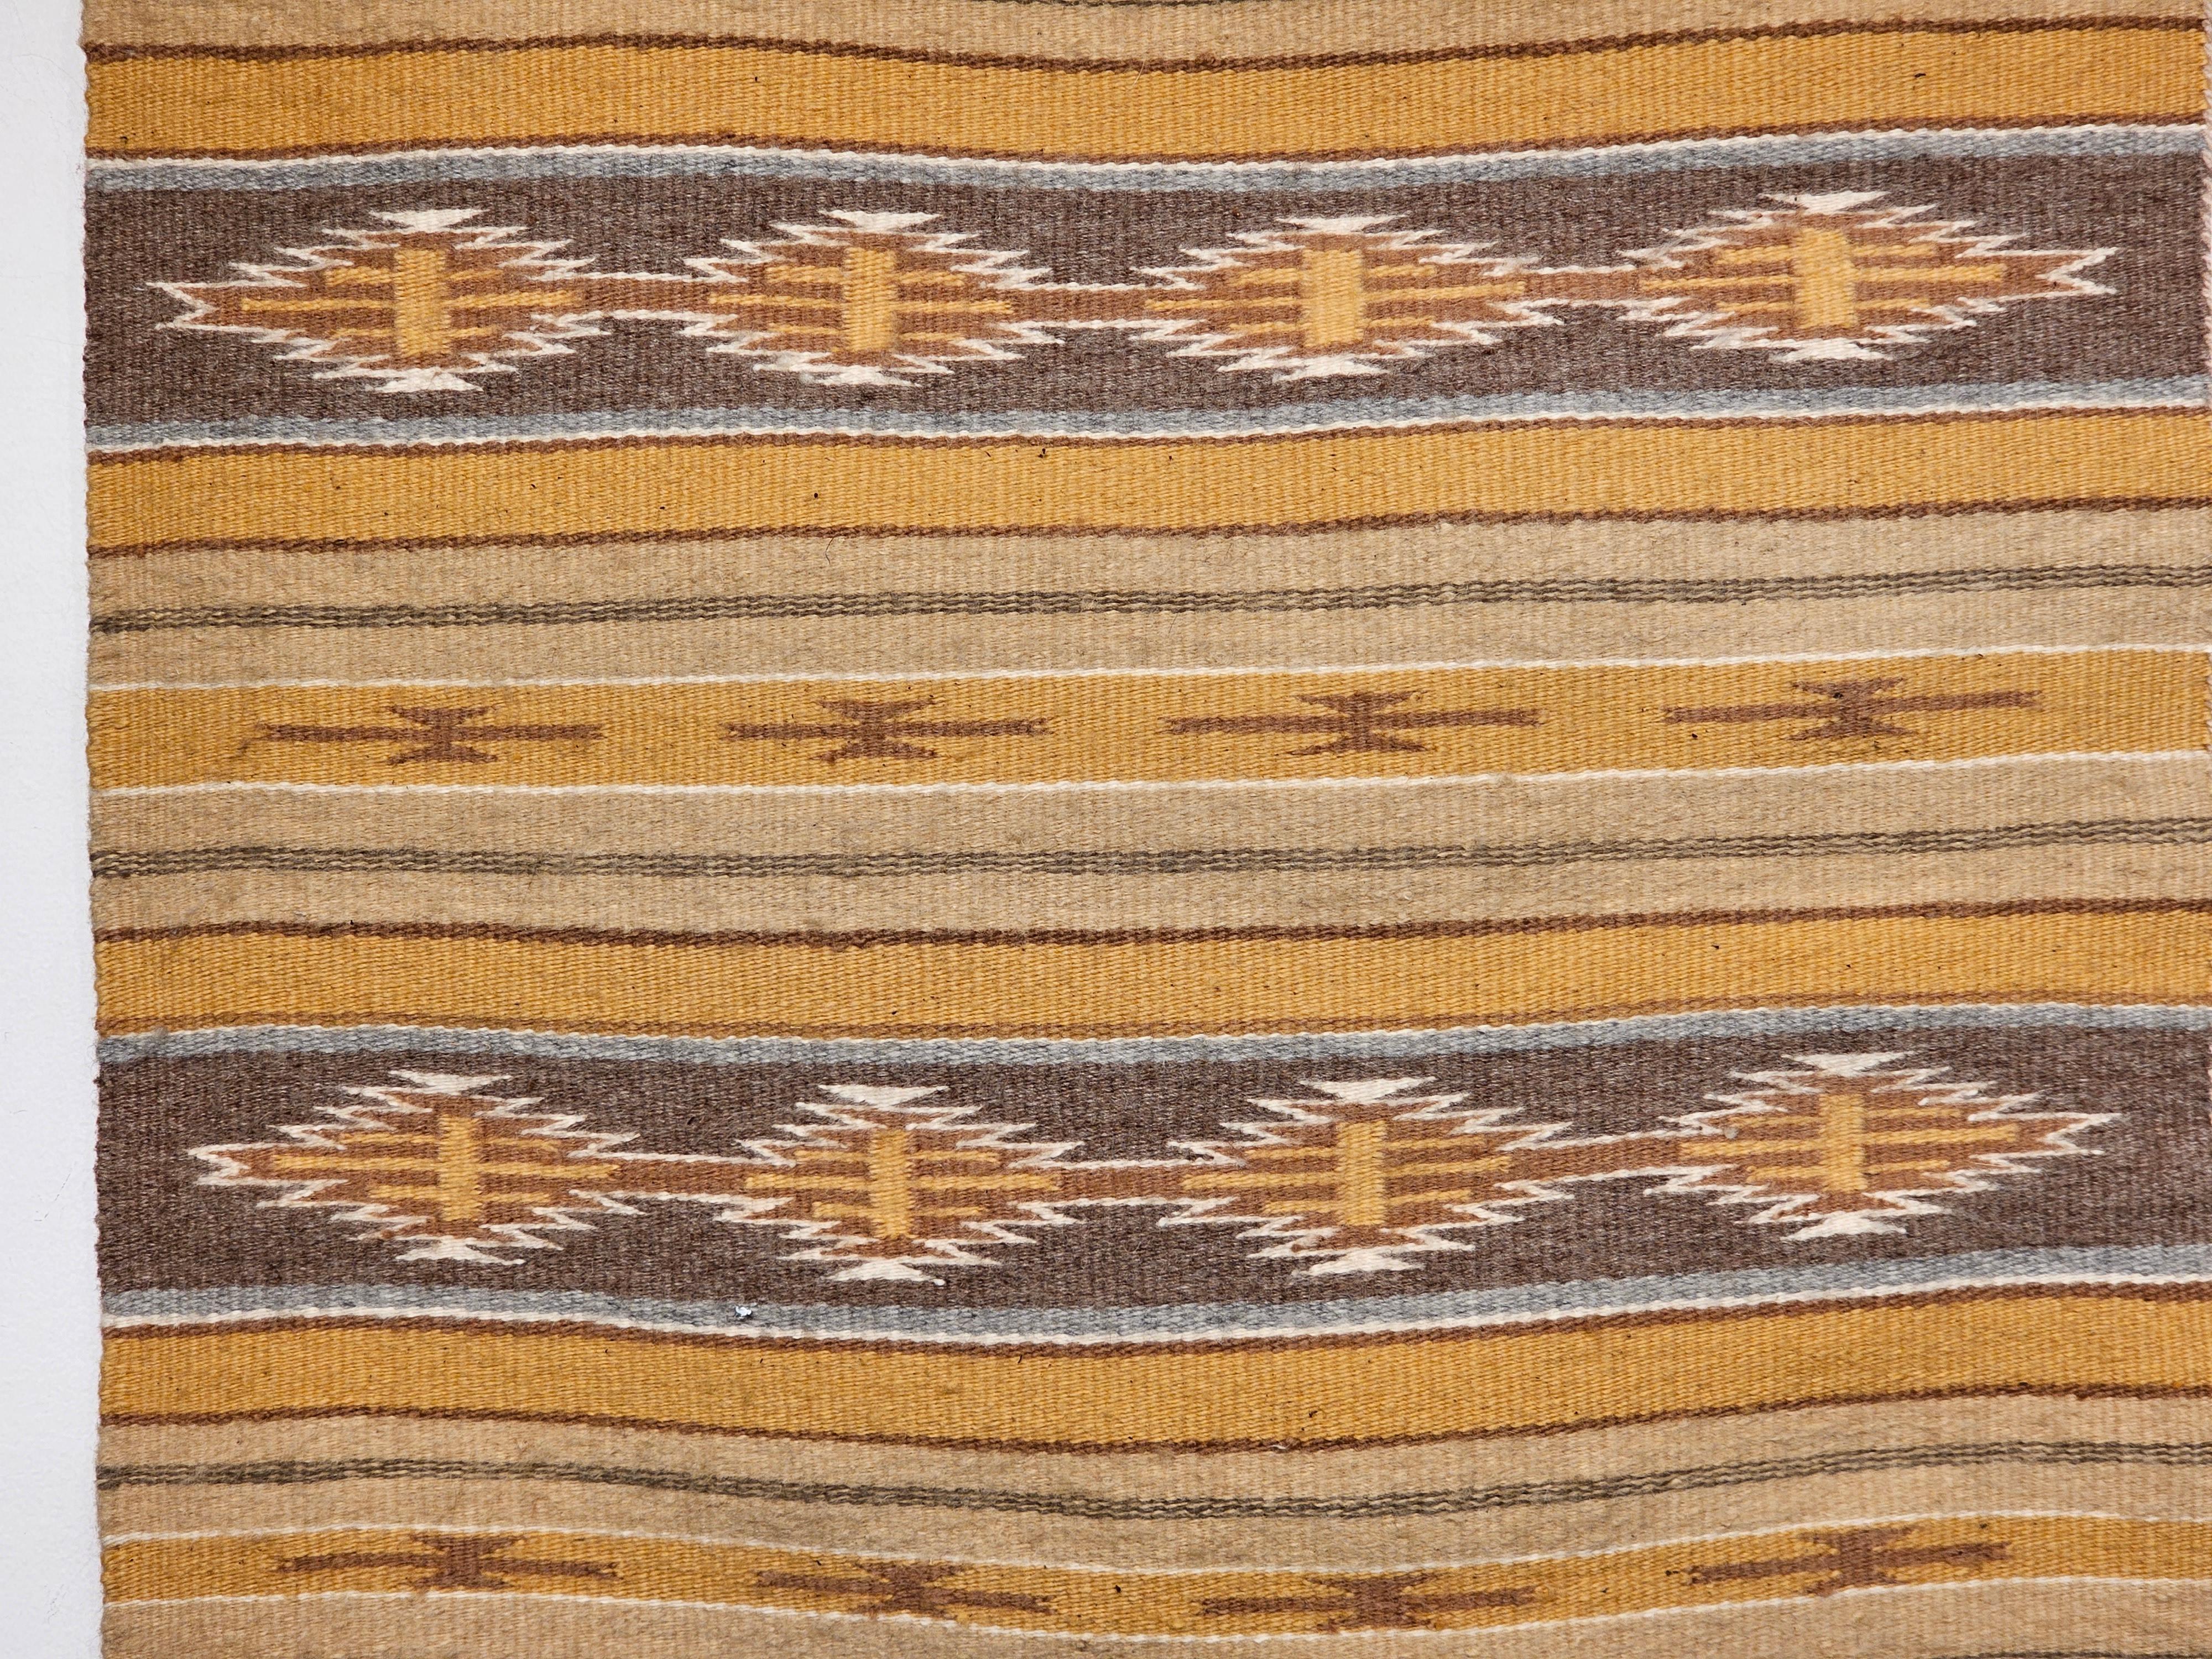 American Vintage Navajo Rug in Stripe Pattern in Earth Tones Brown, Caramel, Ivory, Gray